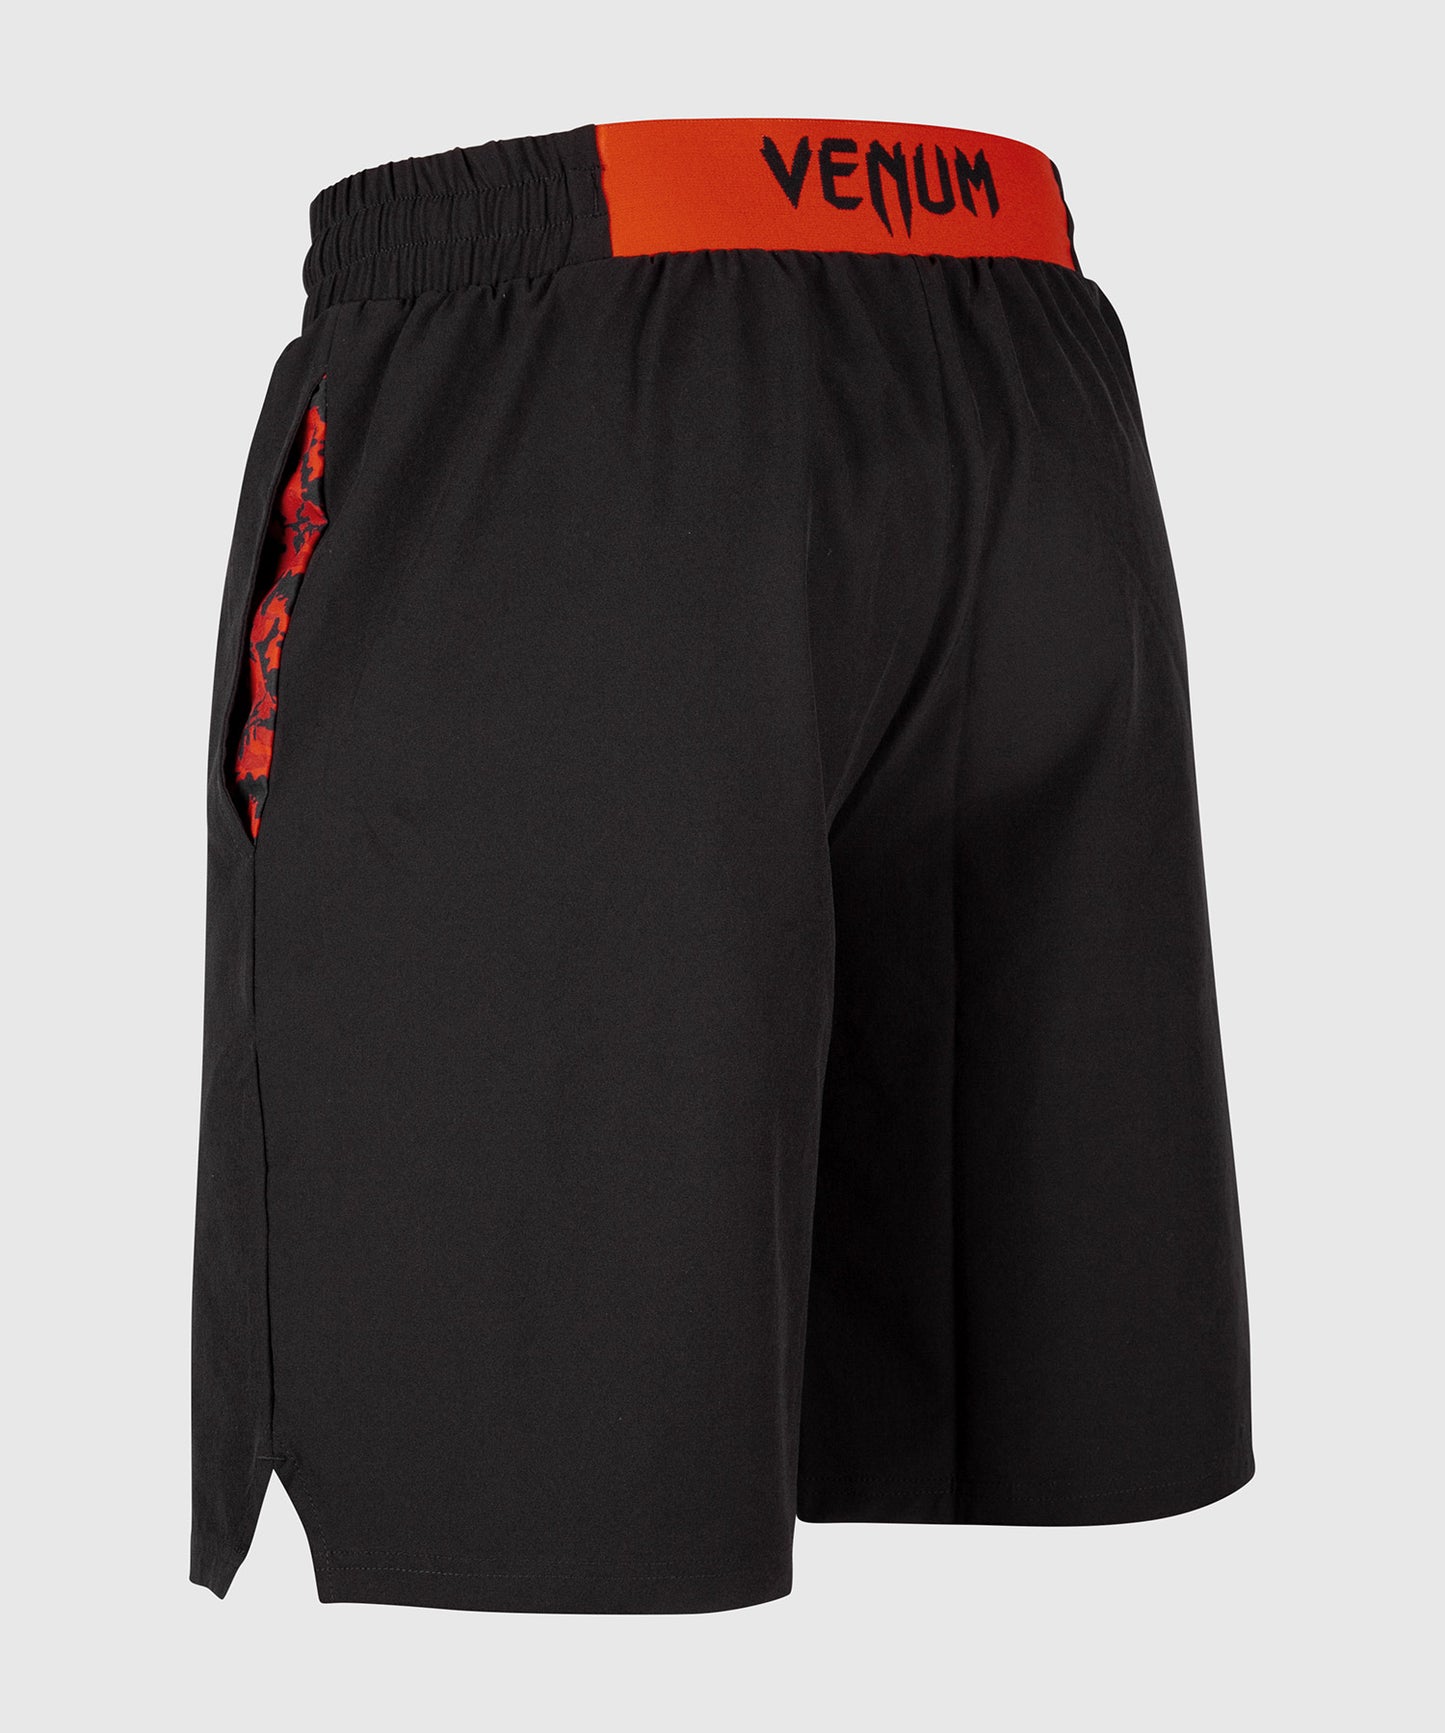 Pantaloncini da Allenamento Classic Venum - Nero/Rosso